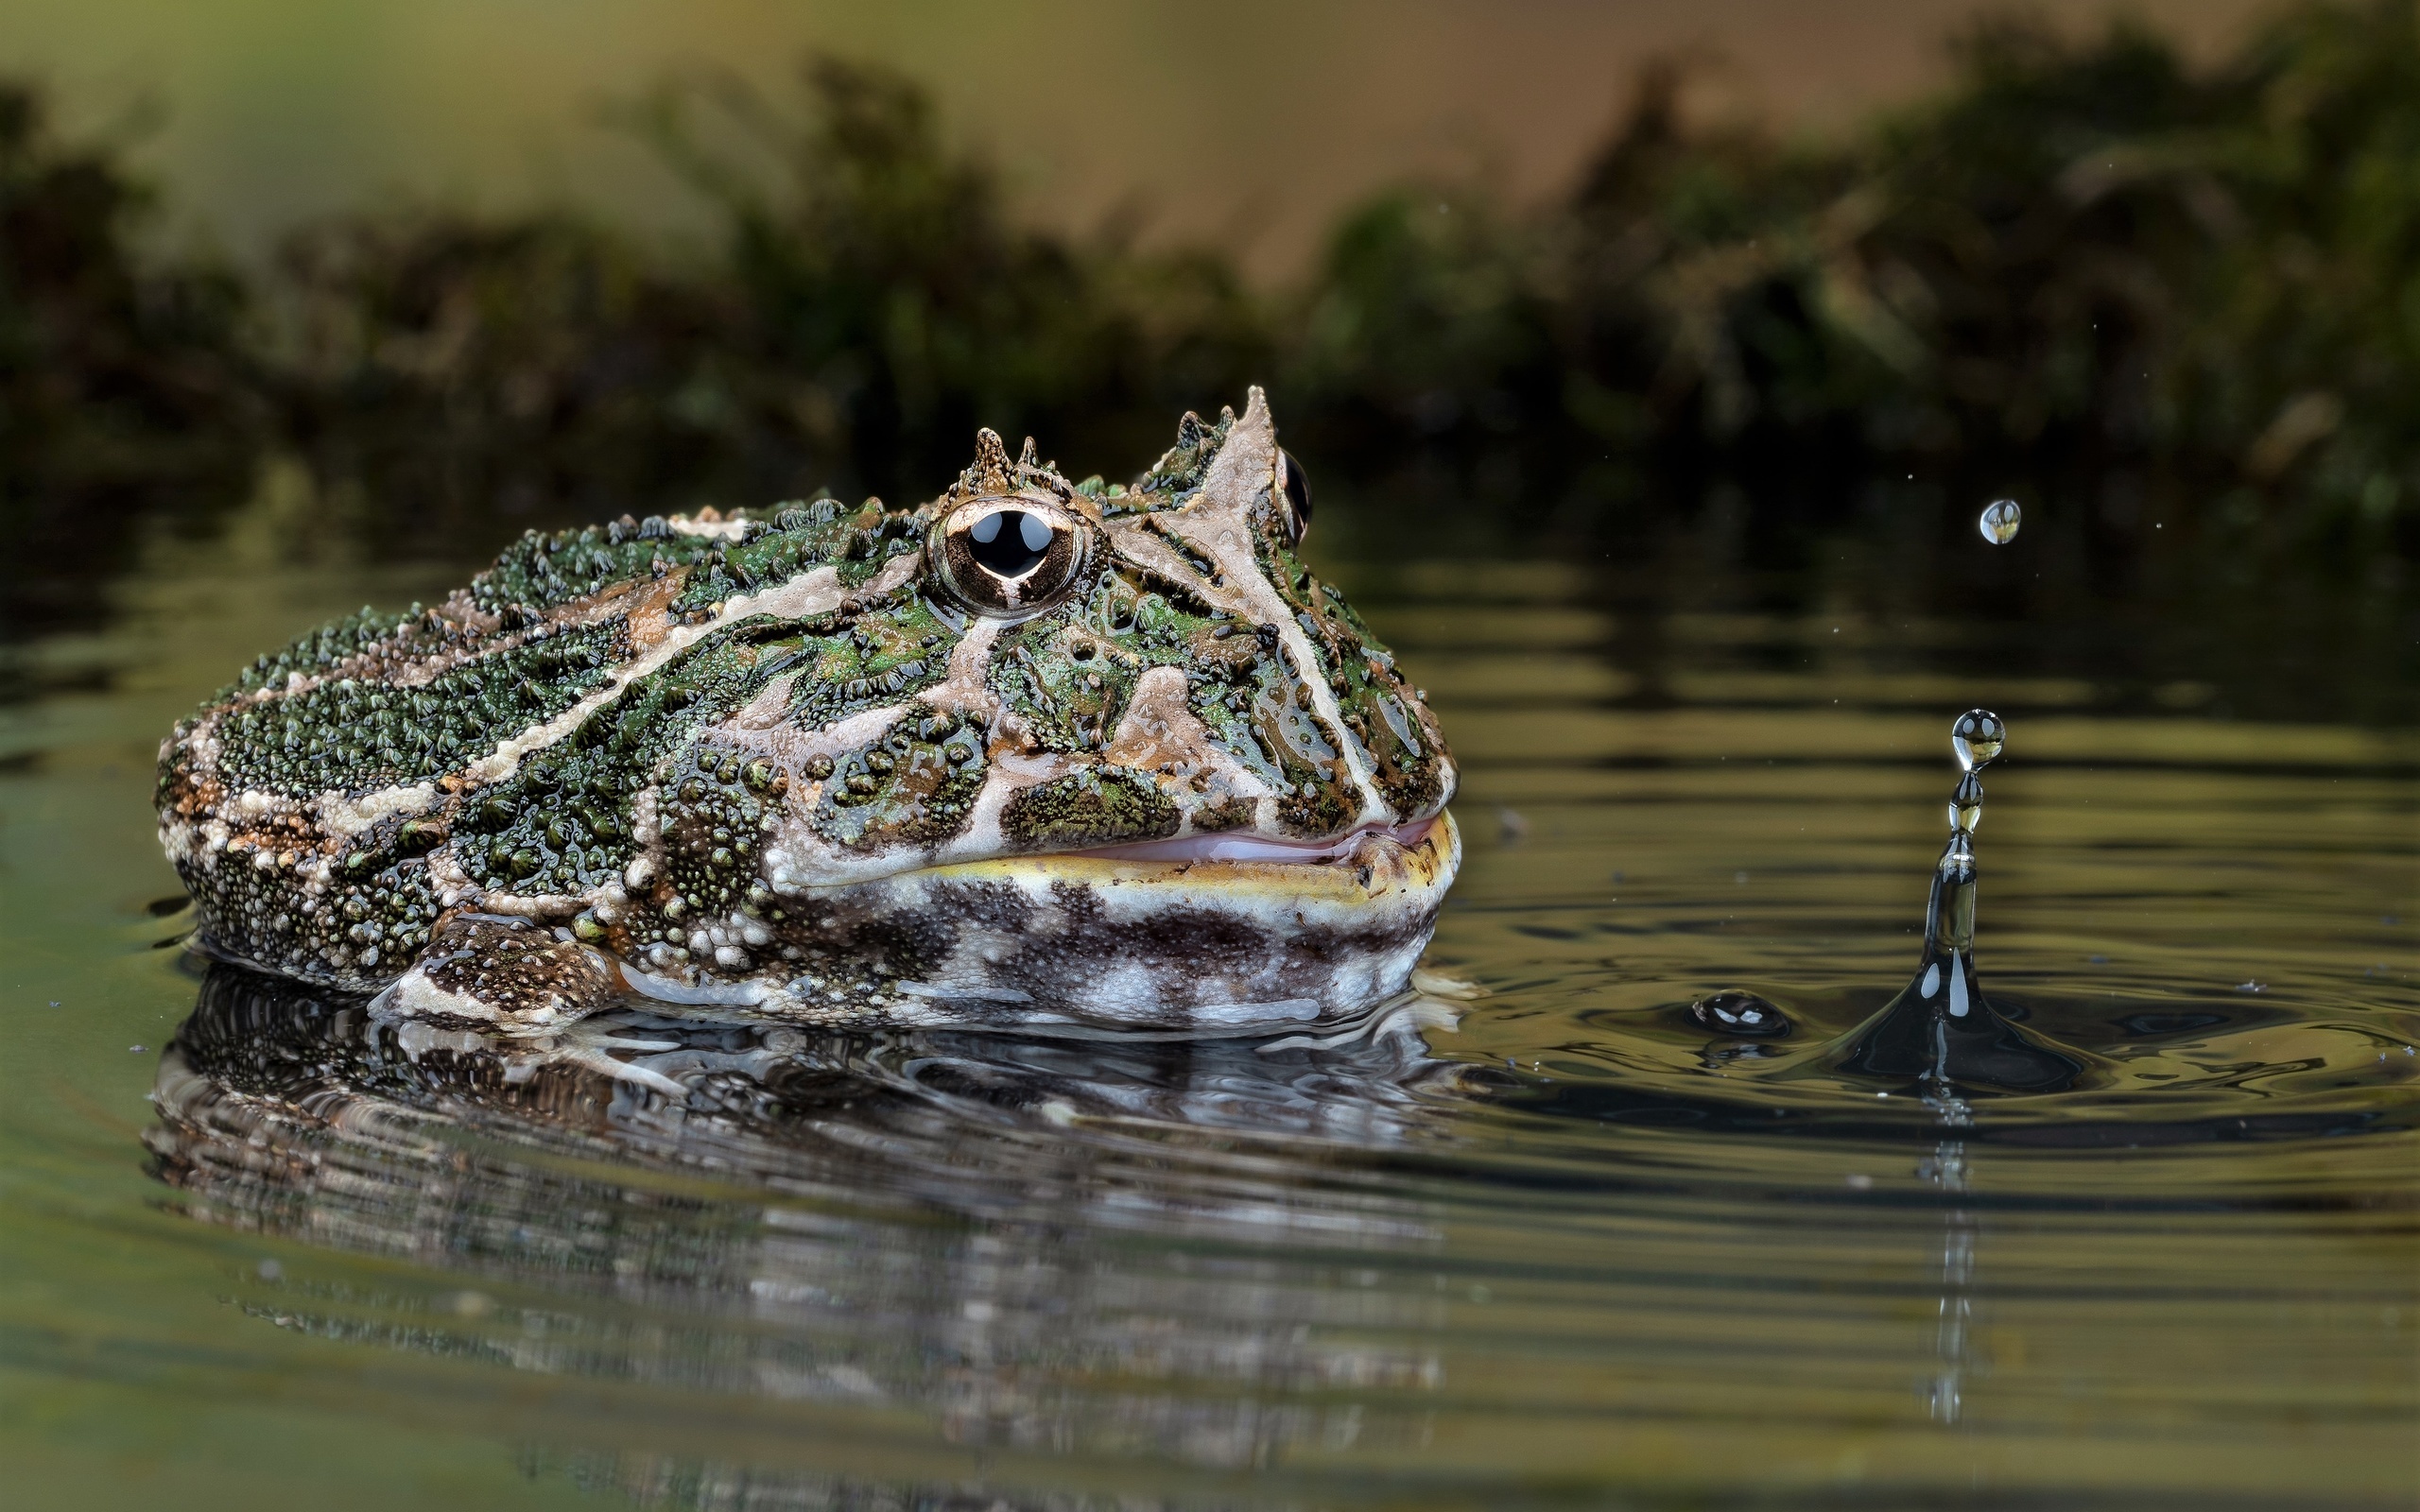 Download wallpaper, Frog imagery, Pond scenery, Toad's habitat, 2560x1600 HD Desktop